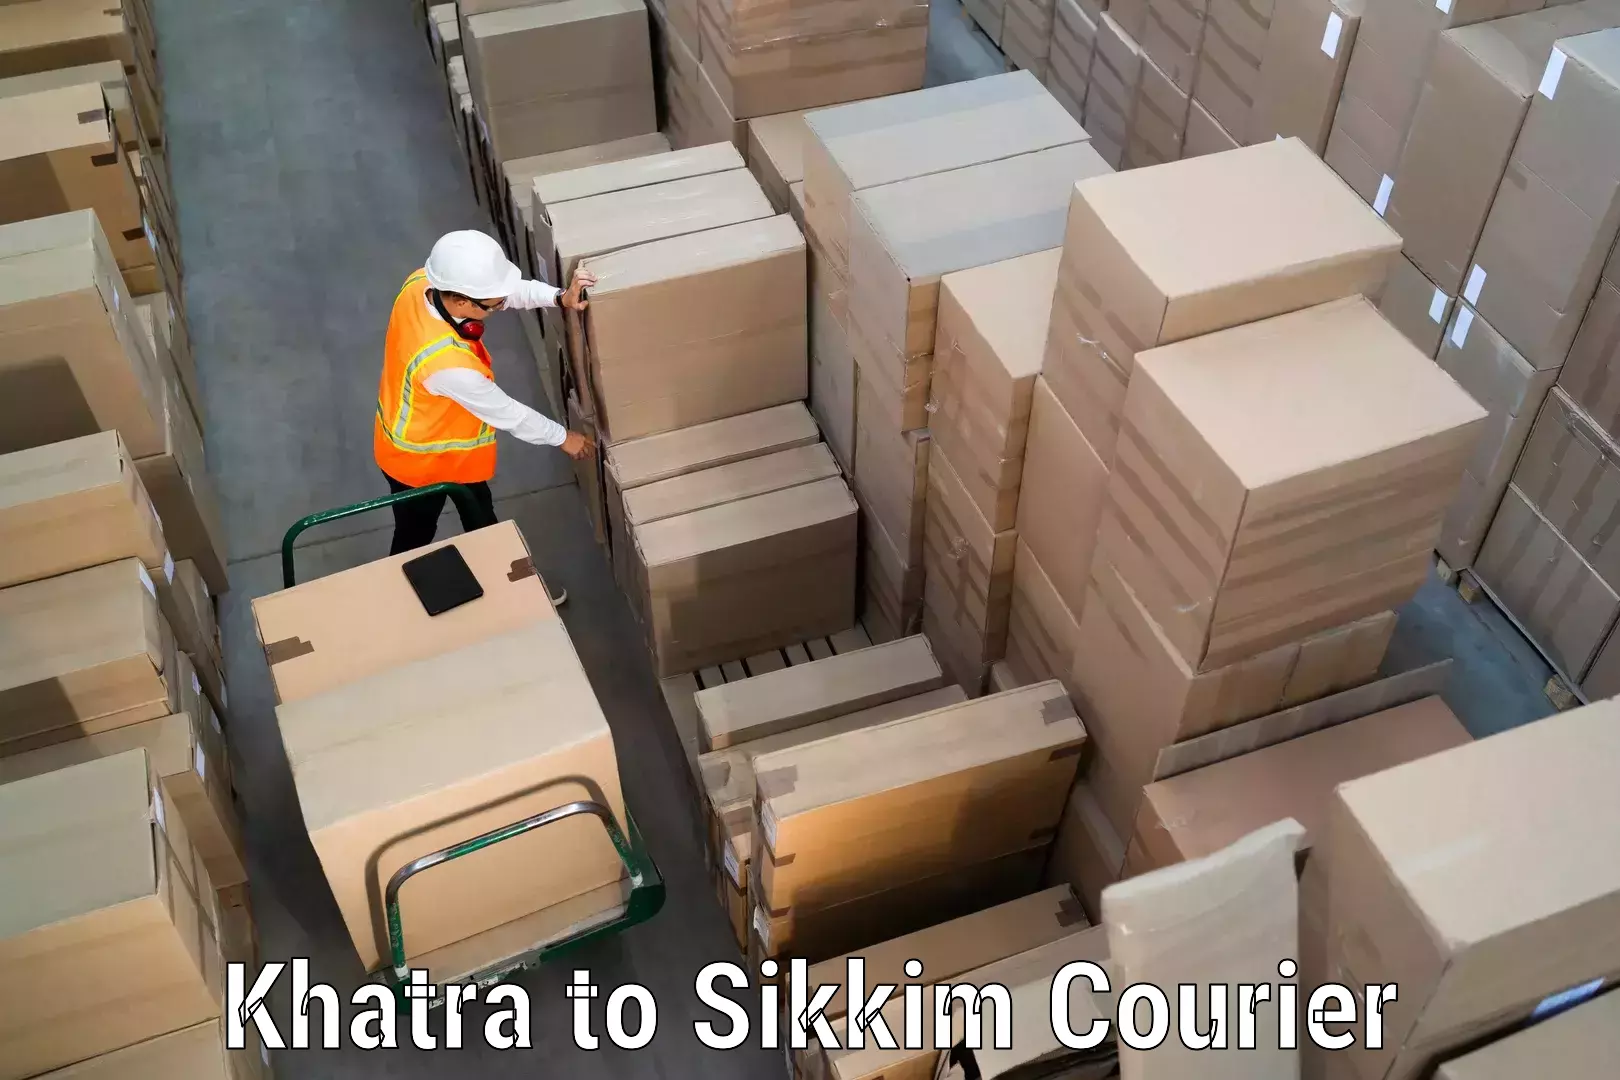 Courier service comparison Khatra to South Sikkim